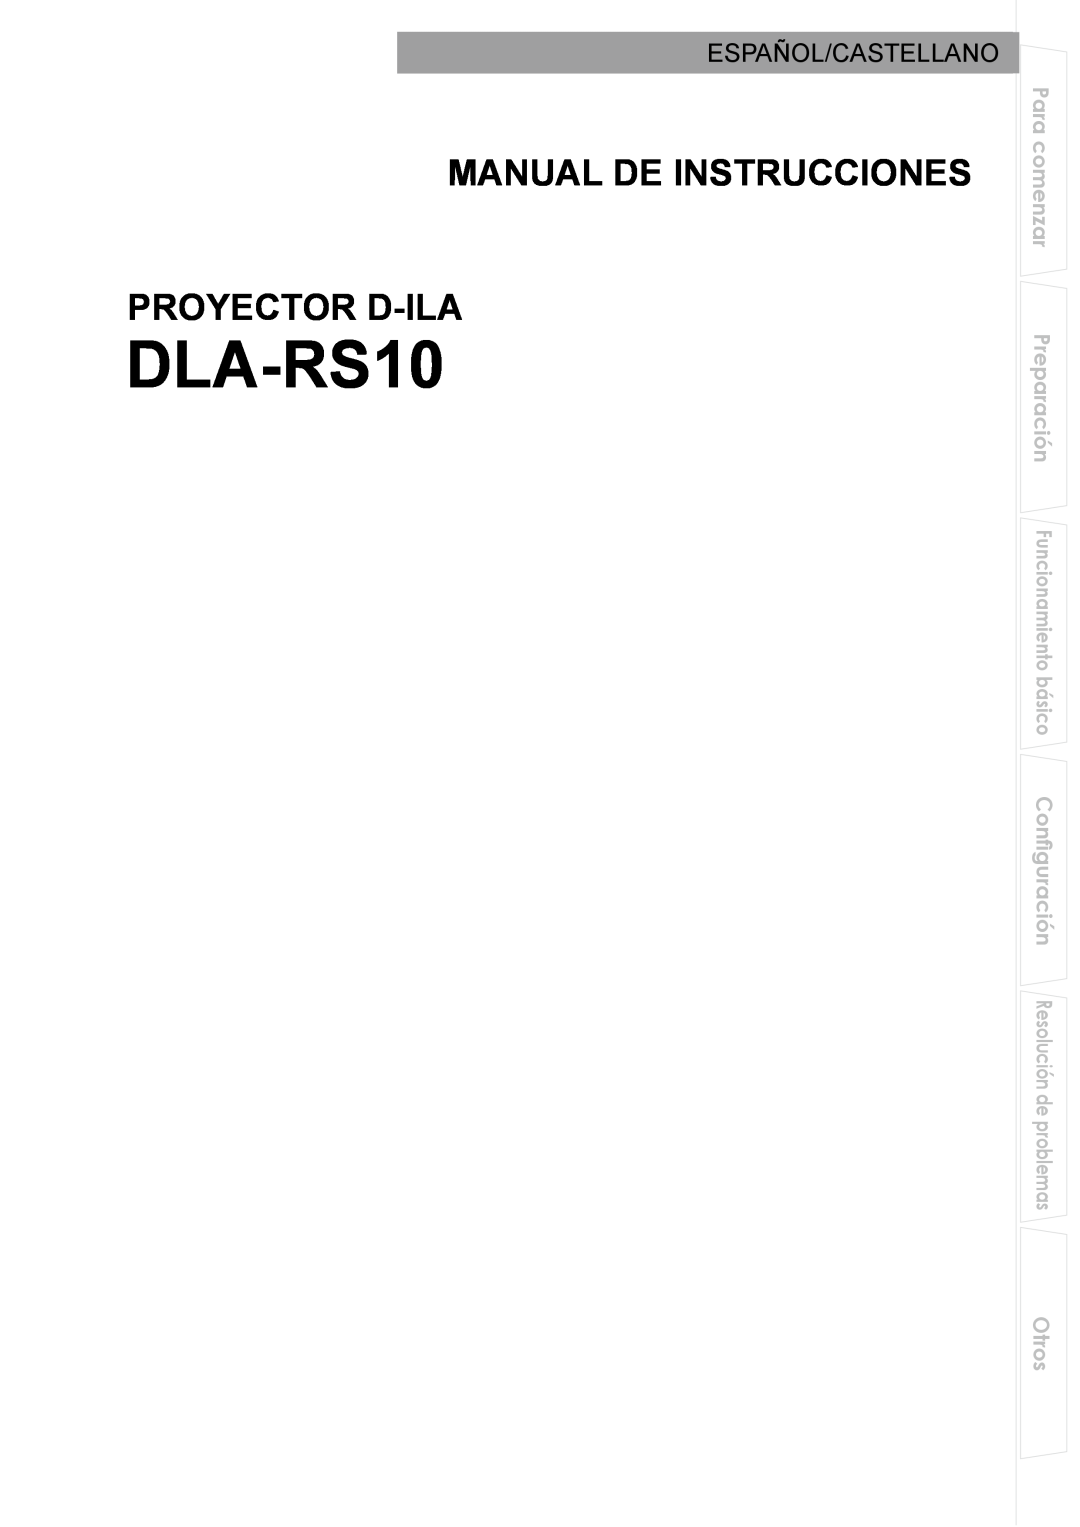 JVC DLA-RS10 manual Manual De Instrucciones, Proyector D-Ila, Español/Castellano, Para comenzar, Otros 